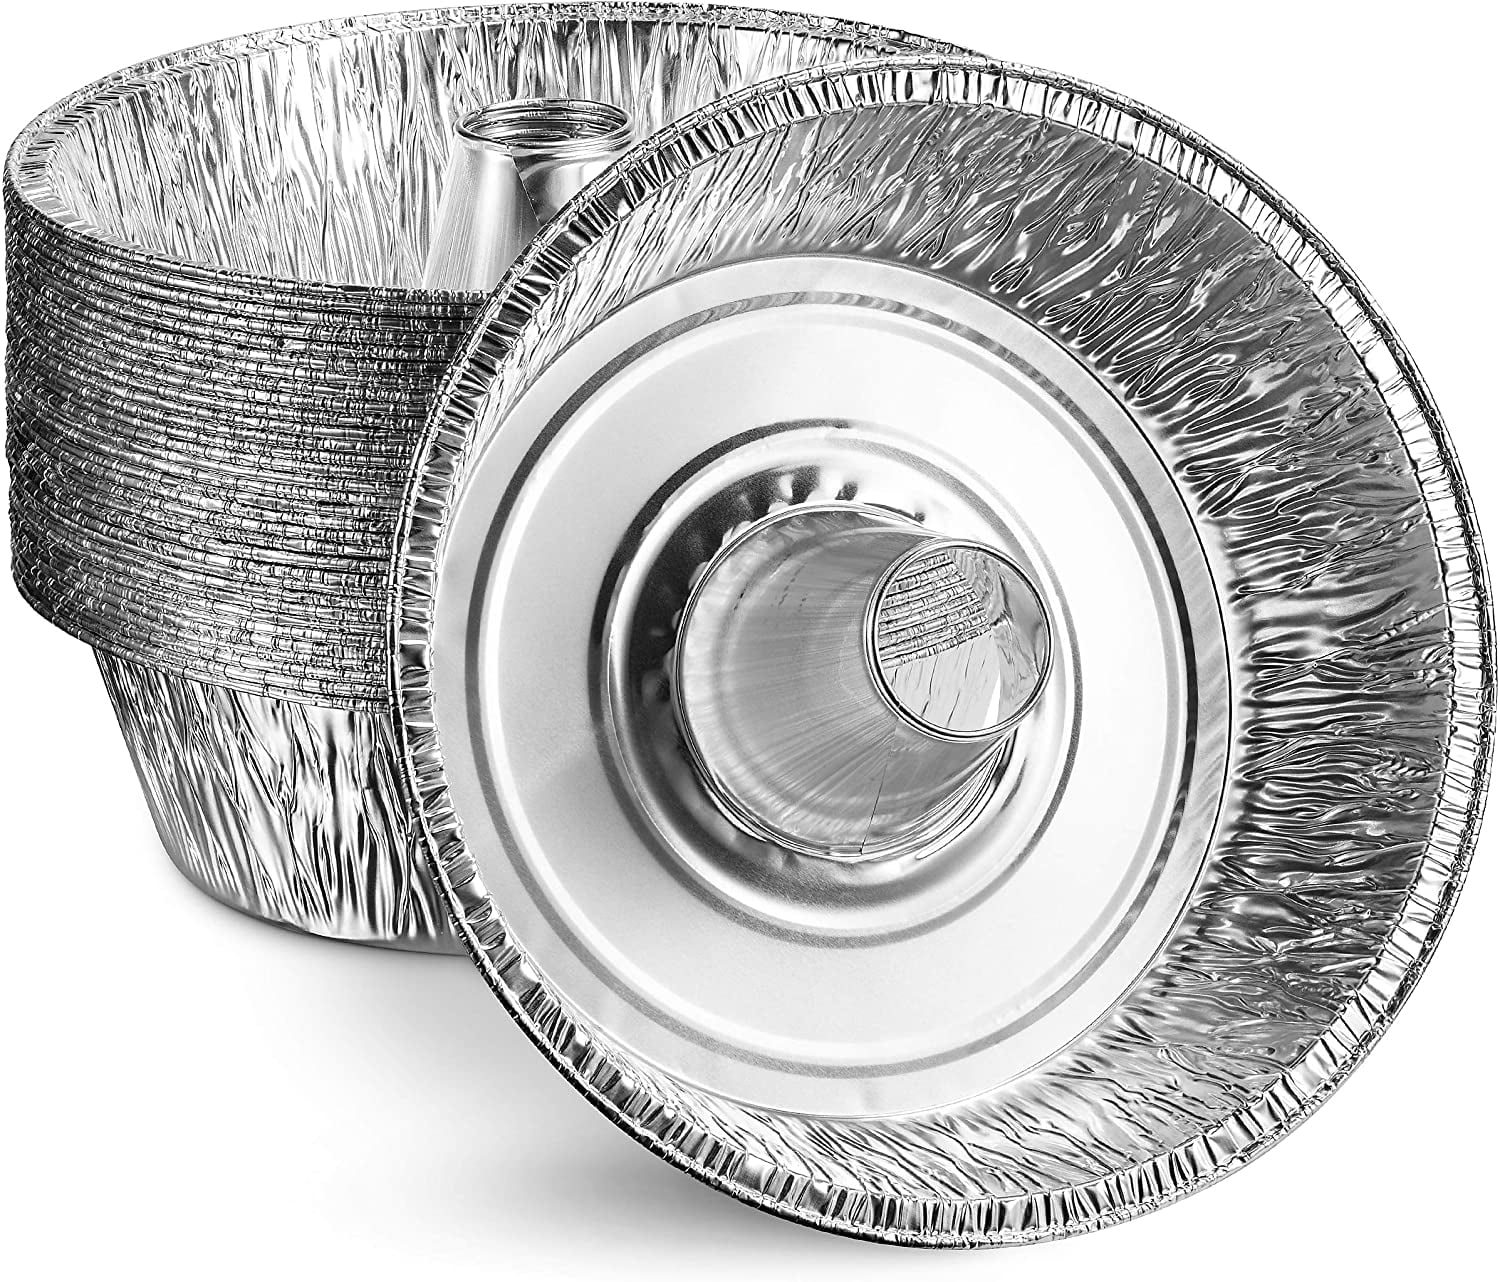 Buy Beasea Disposable Bundt Pans, 7.5 Inch 15 Pack Aluminum Foil